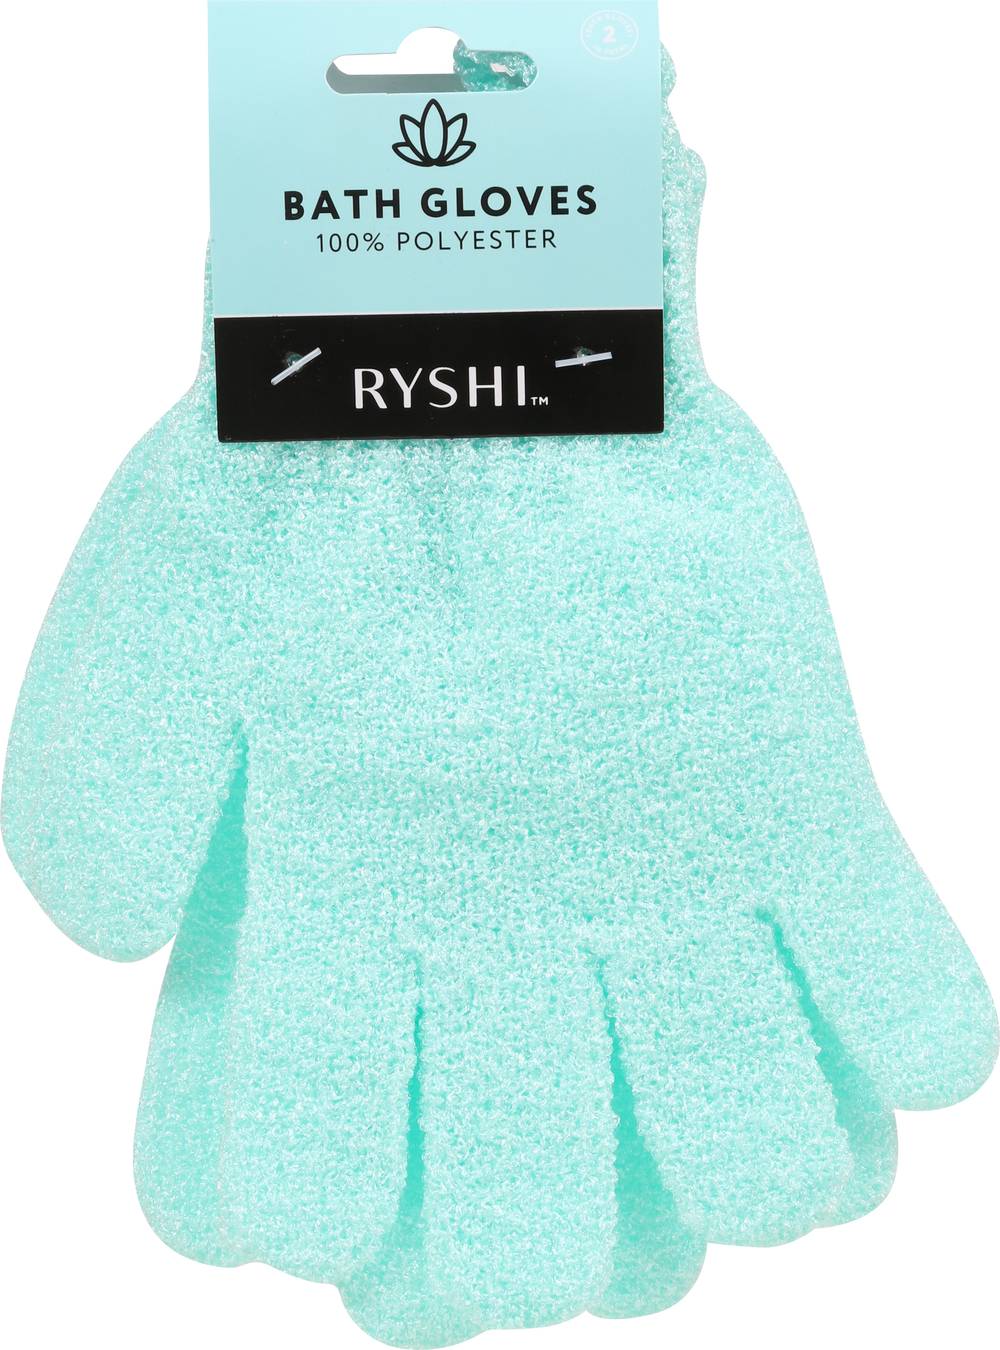 Ryshi Bath Gloves Nylon